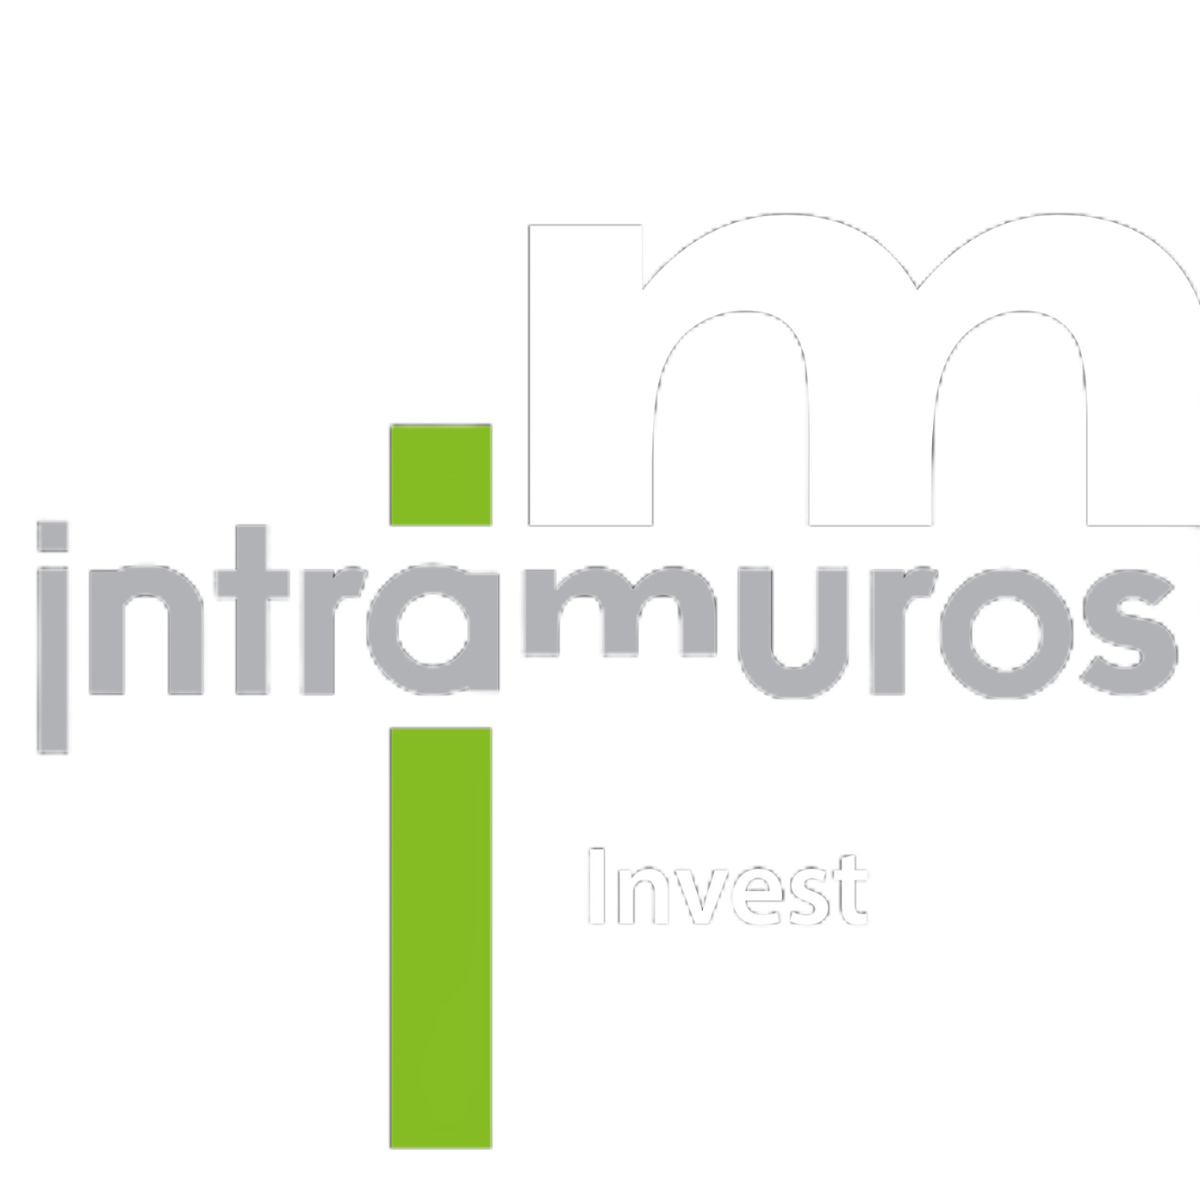 Intramuros Invest